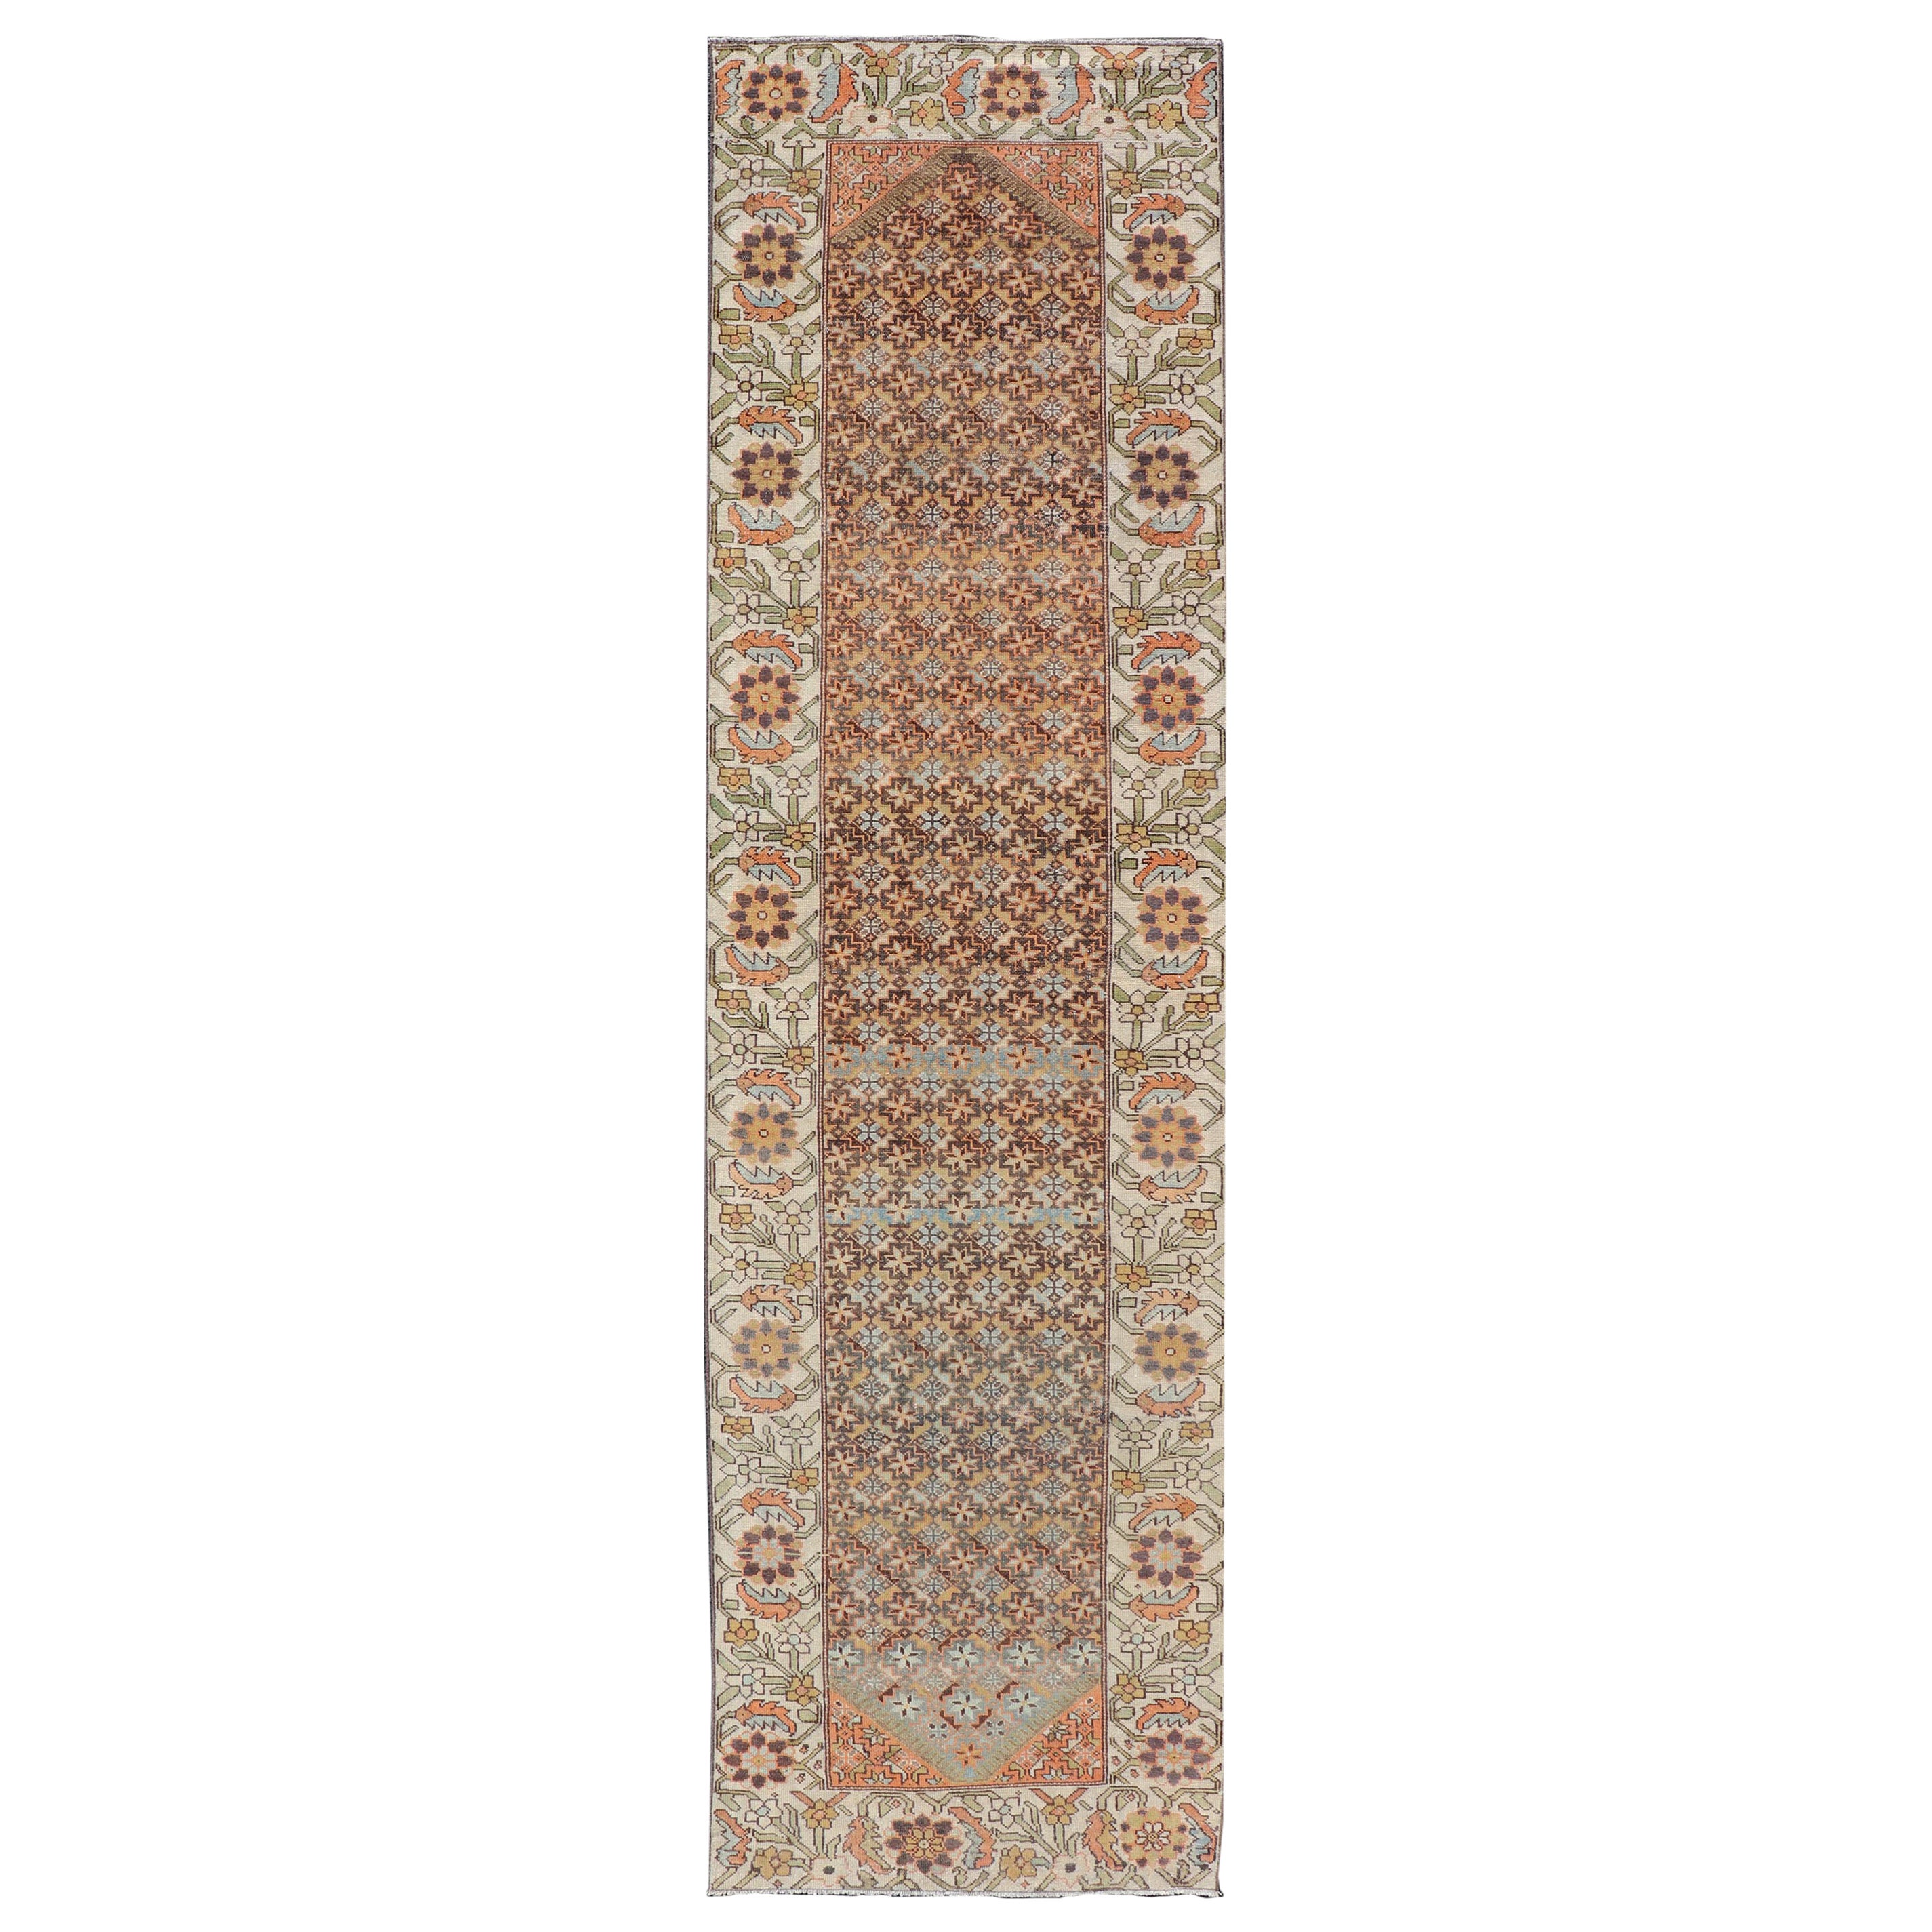 Tapis de couloir persan Bakhtiari ancien coloré avec bordure florale et tribale sur toute sa surface